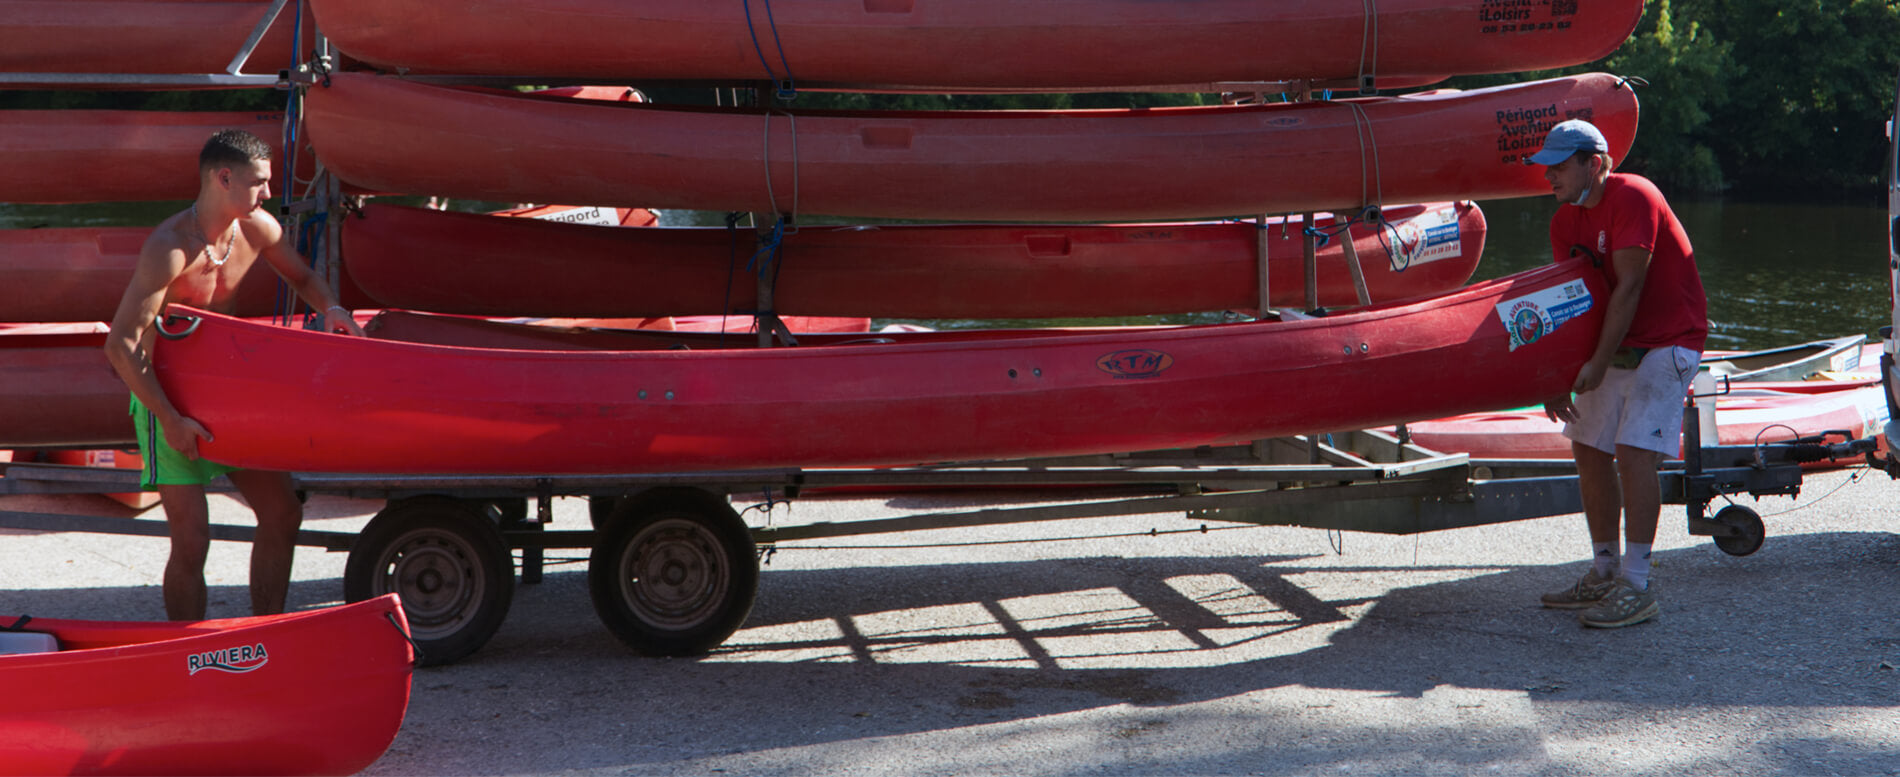 Two men transporting a red kayak